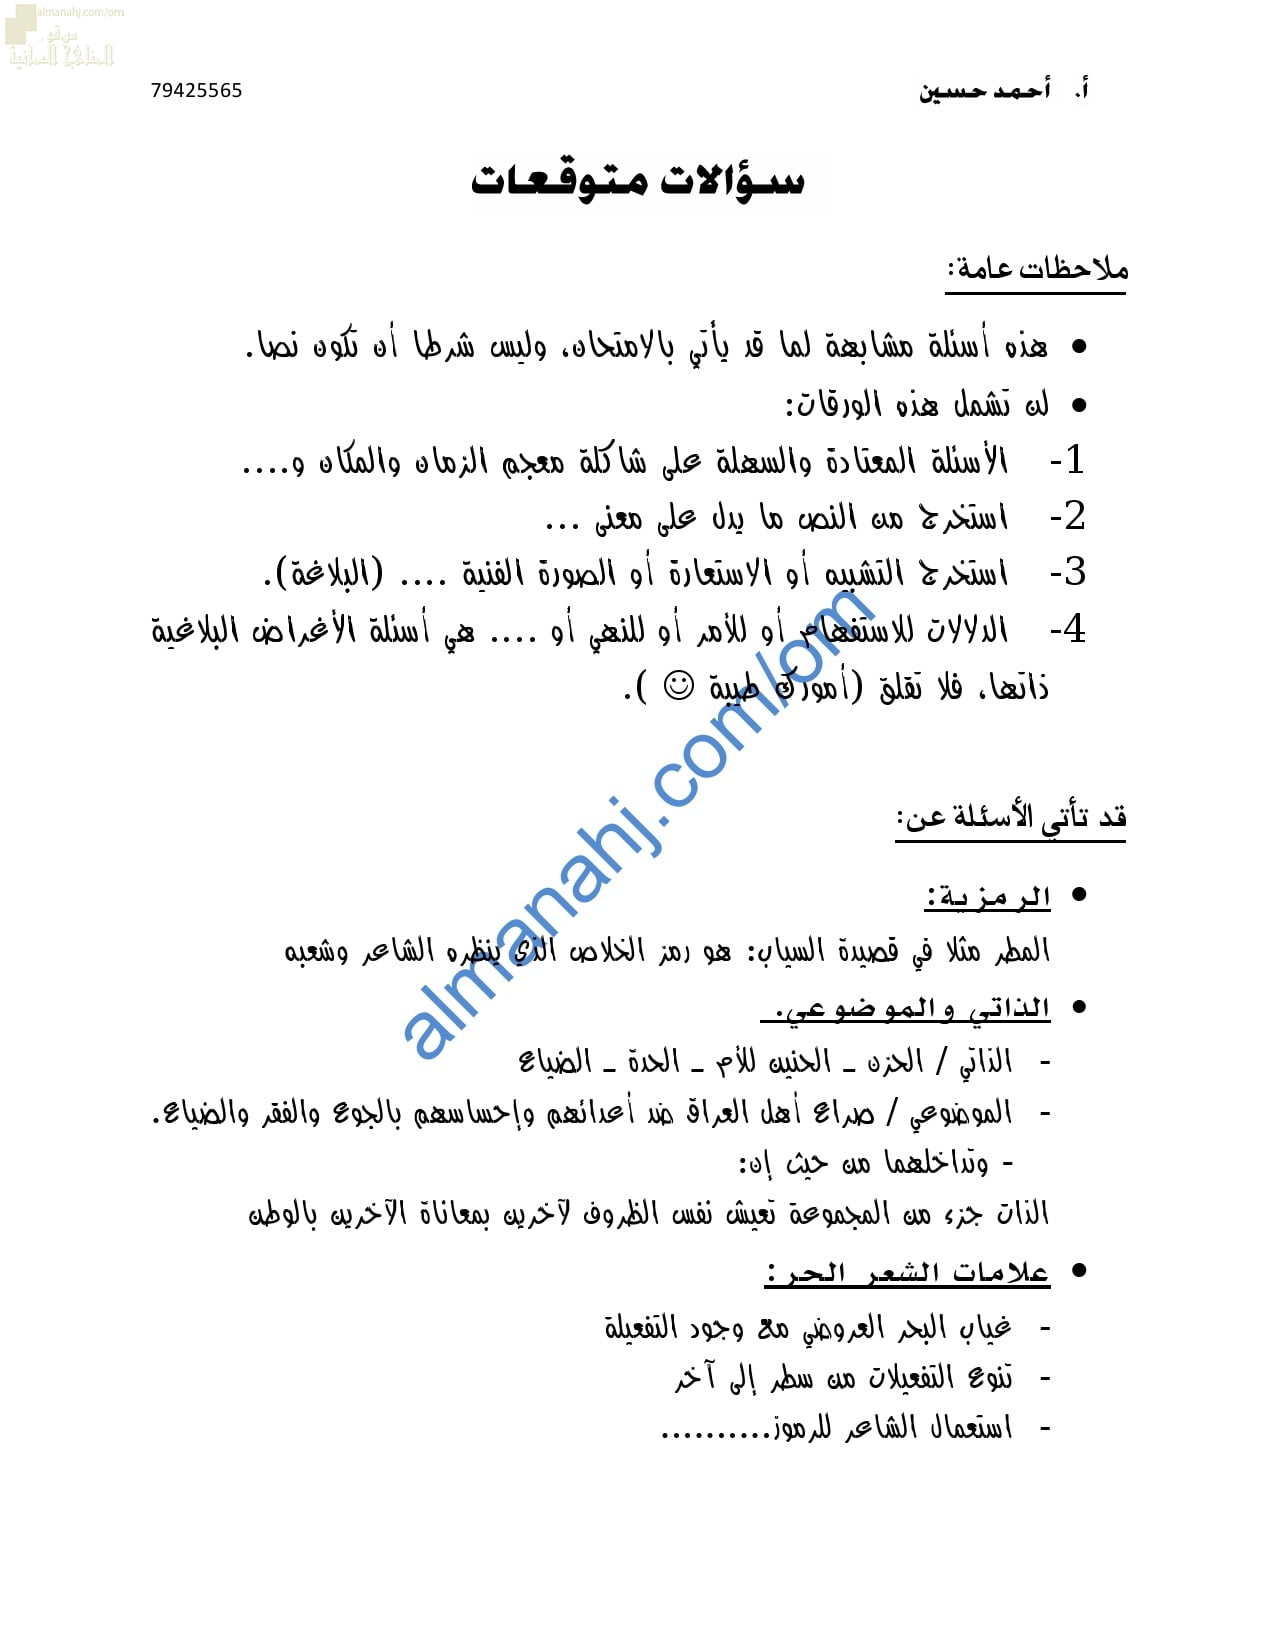 الأسئلة المتوقعة للاختبار النهائي (لغة عربية) الثاني عشر